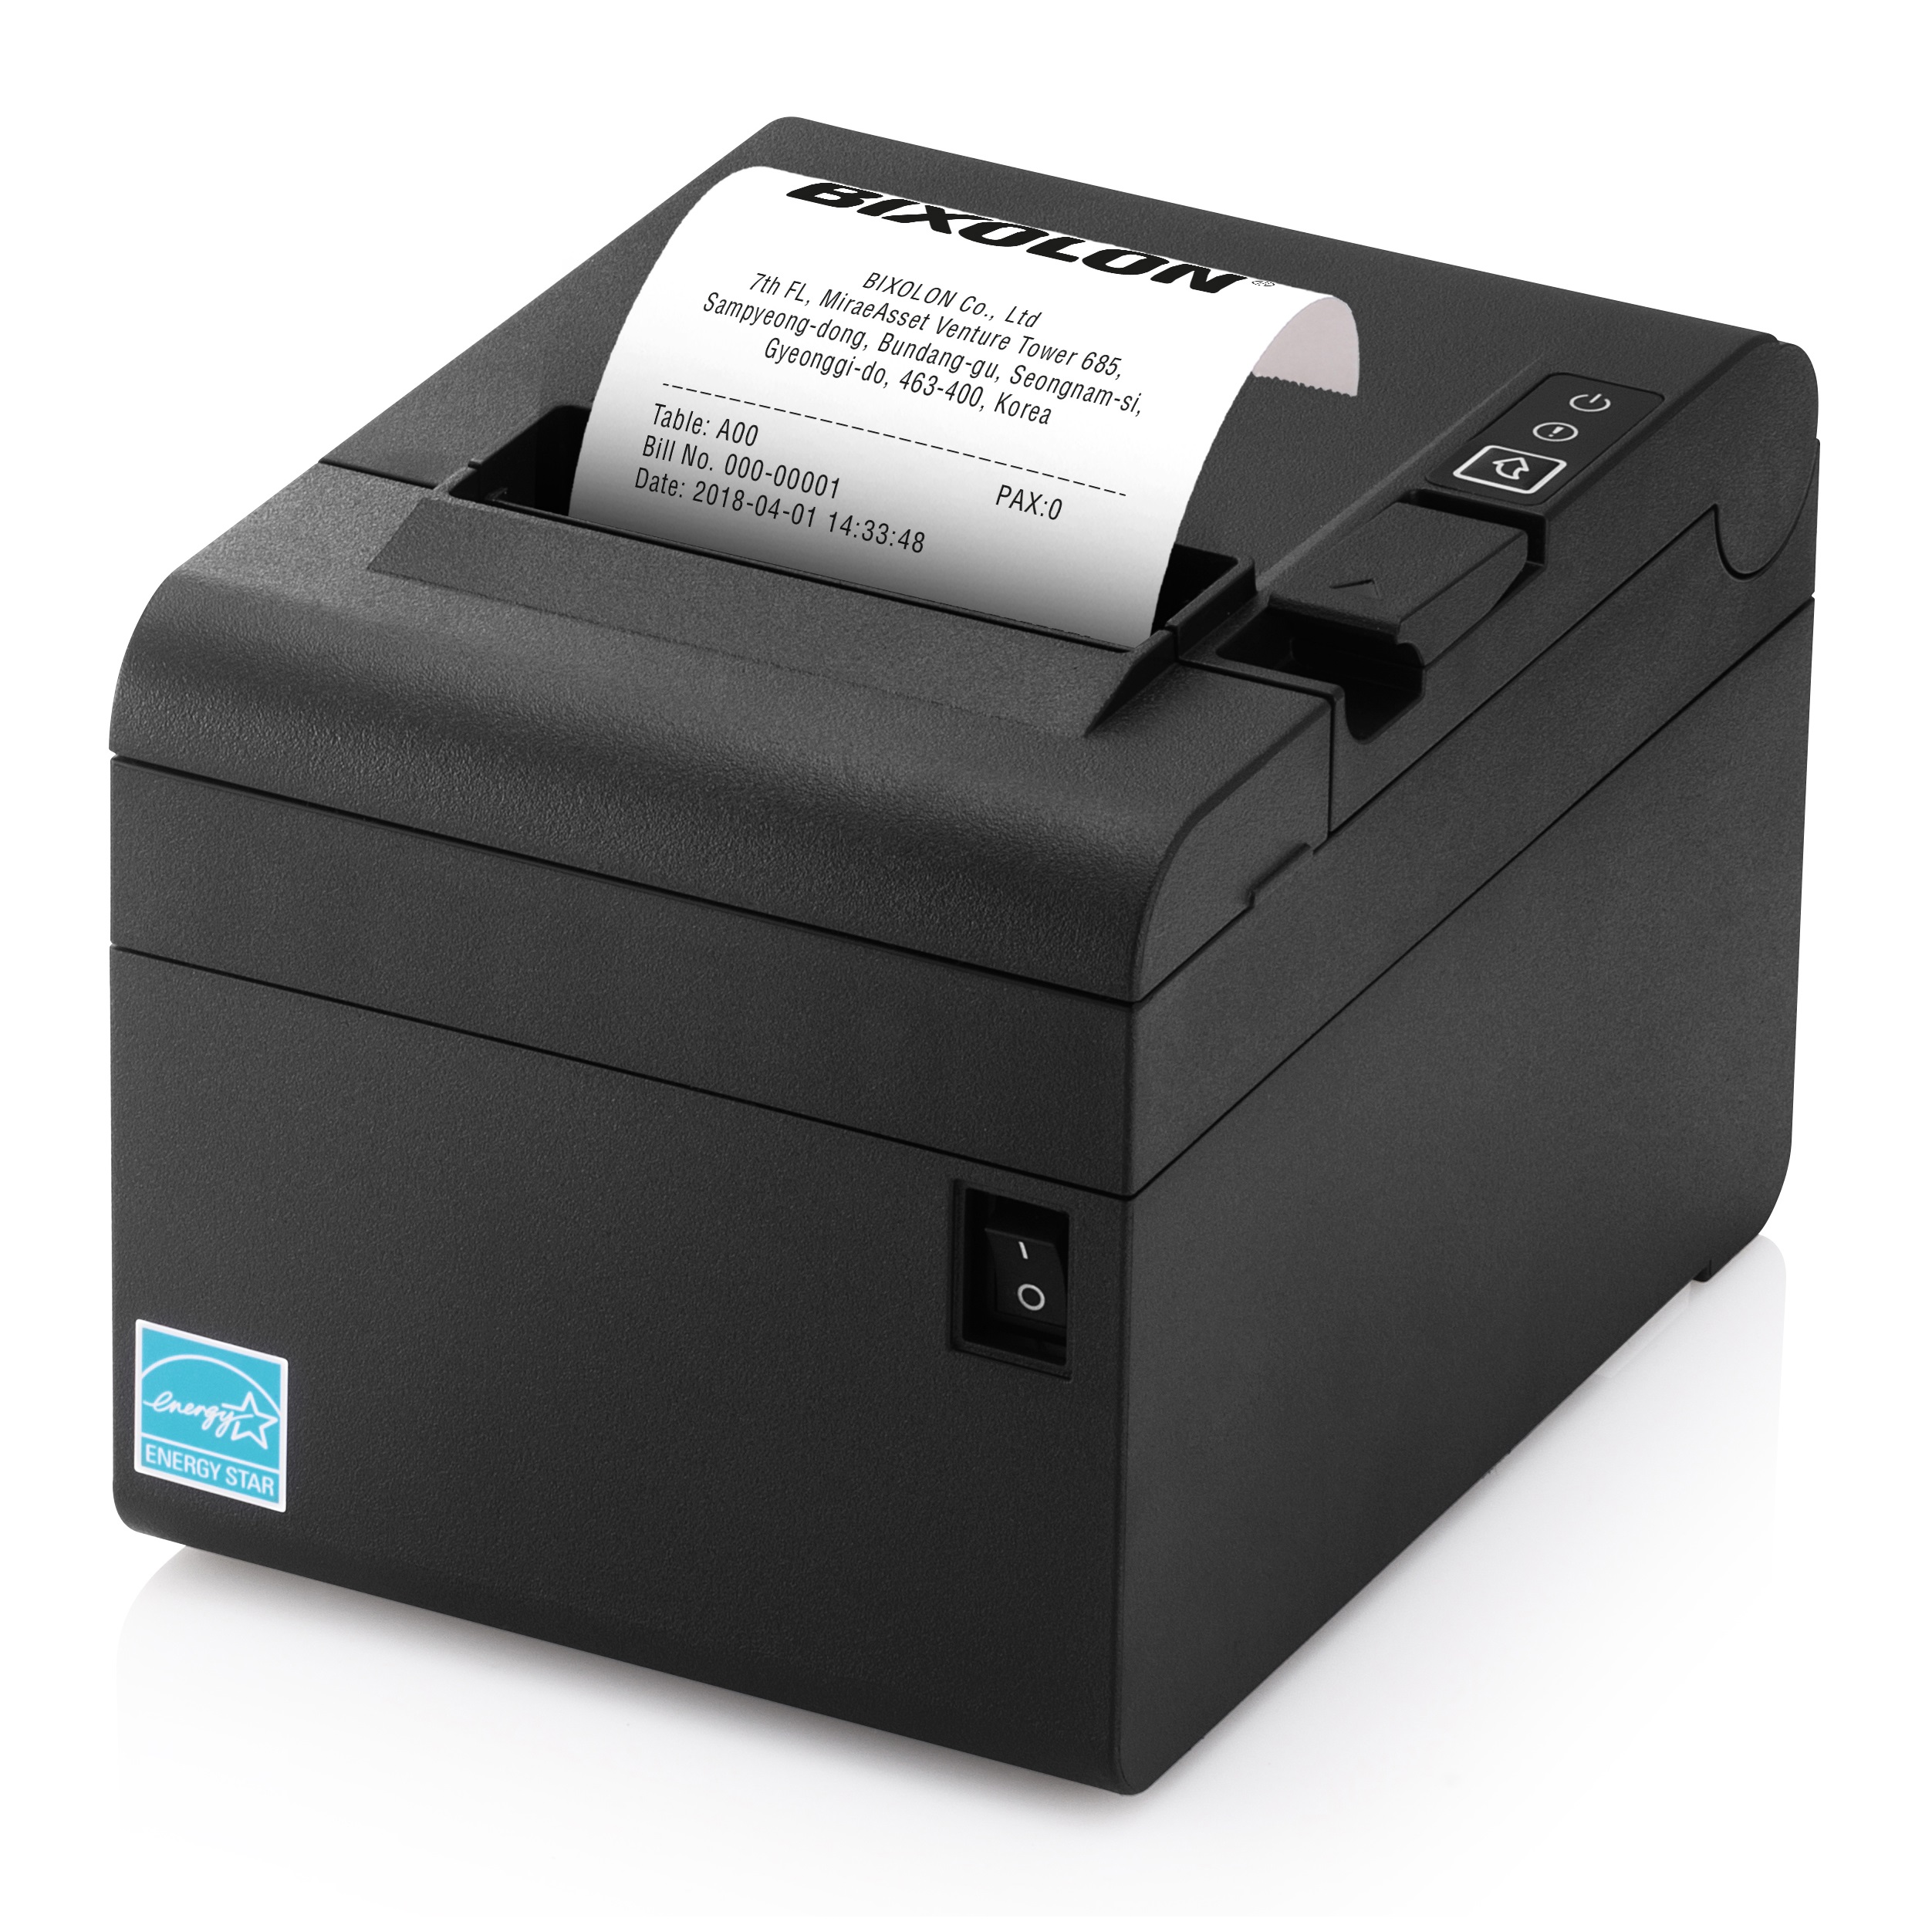 Bixolon SRP-E300 Receipt Printer Image